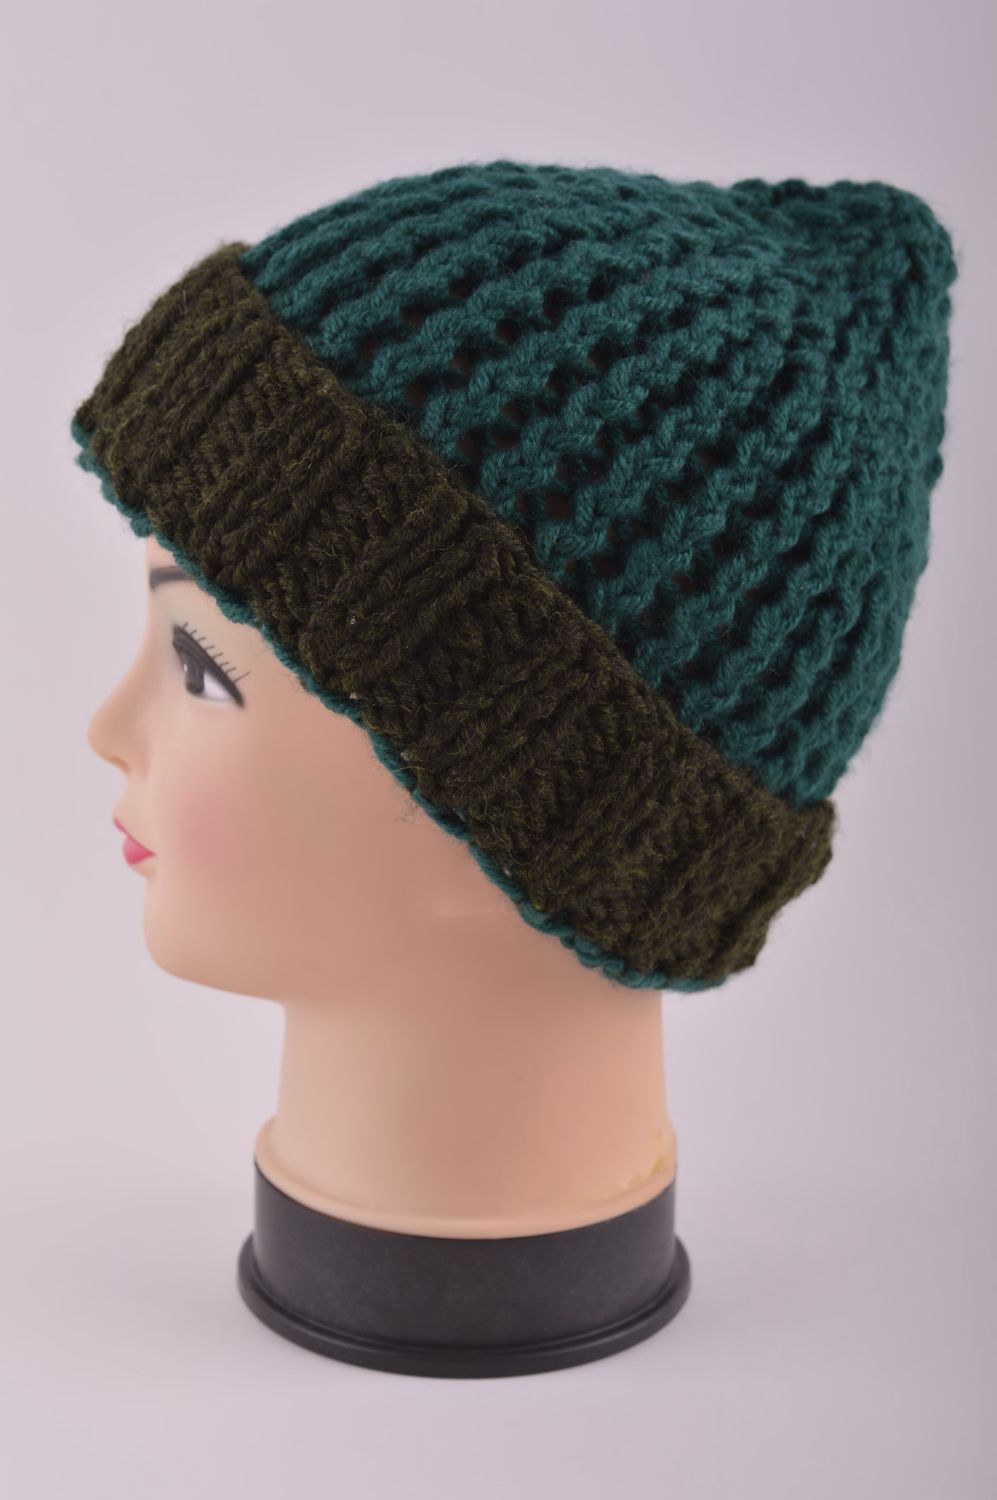 Hand-knitted winter hat handmade woolen hat winter accessories warm hat photo 3